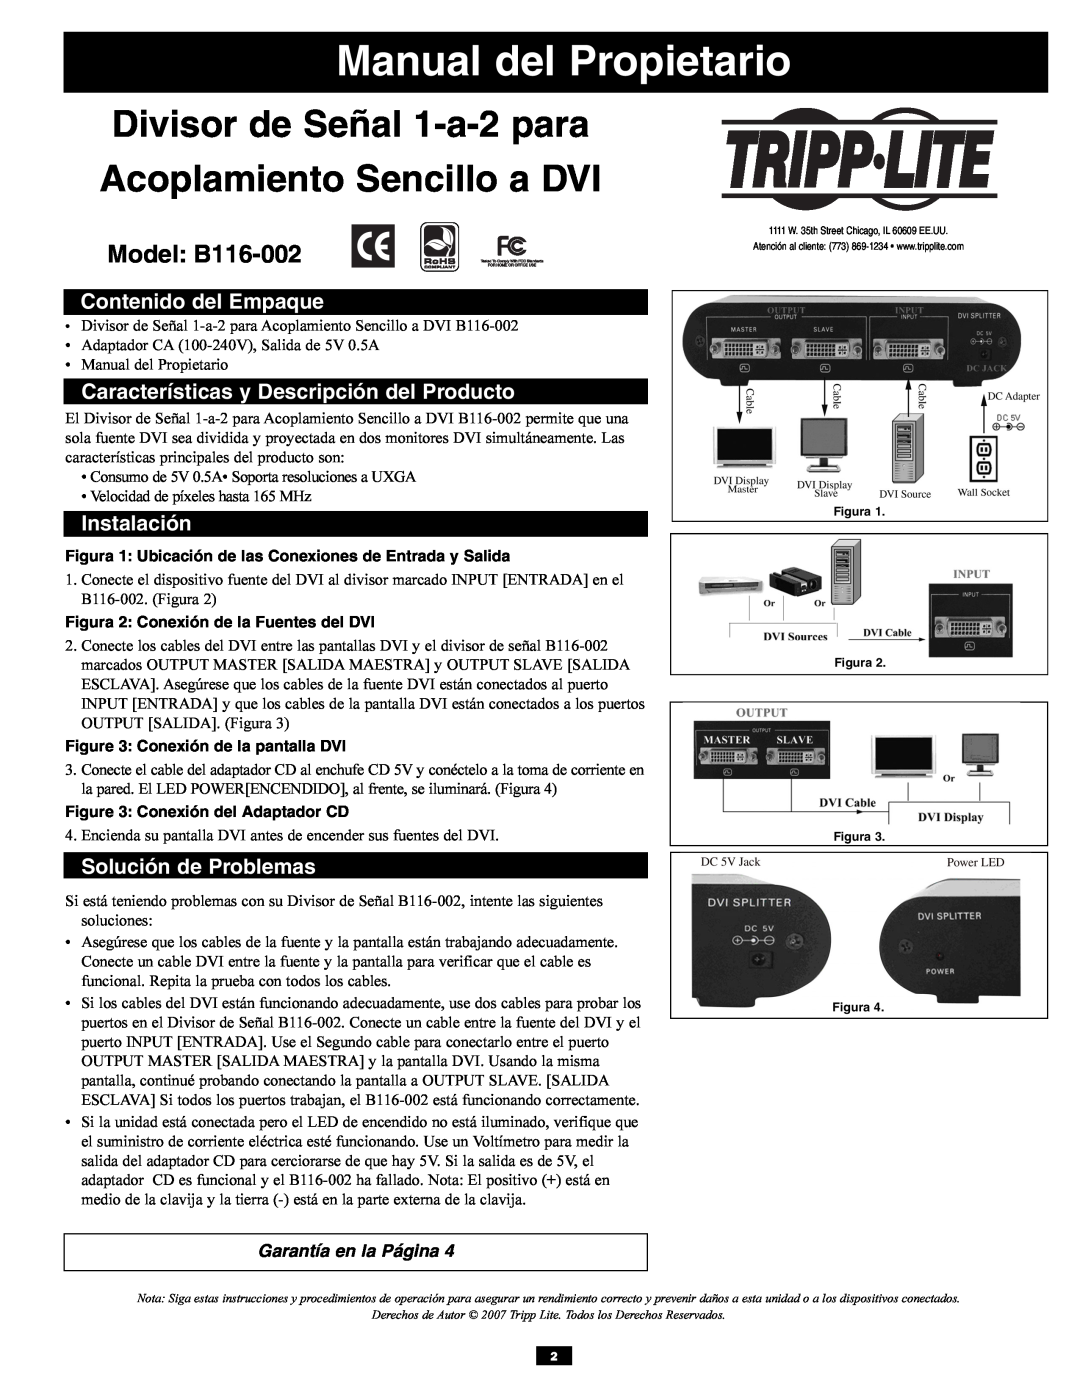 Tripp Lite B116-002 Contenido del Empaque, Características y Descripción del Producto, Instalación, Solución de Problemas 